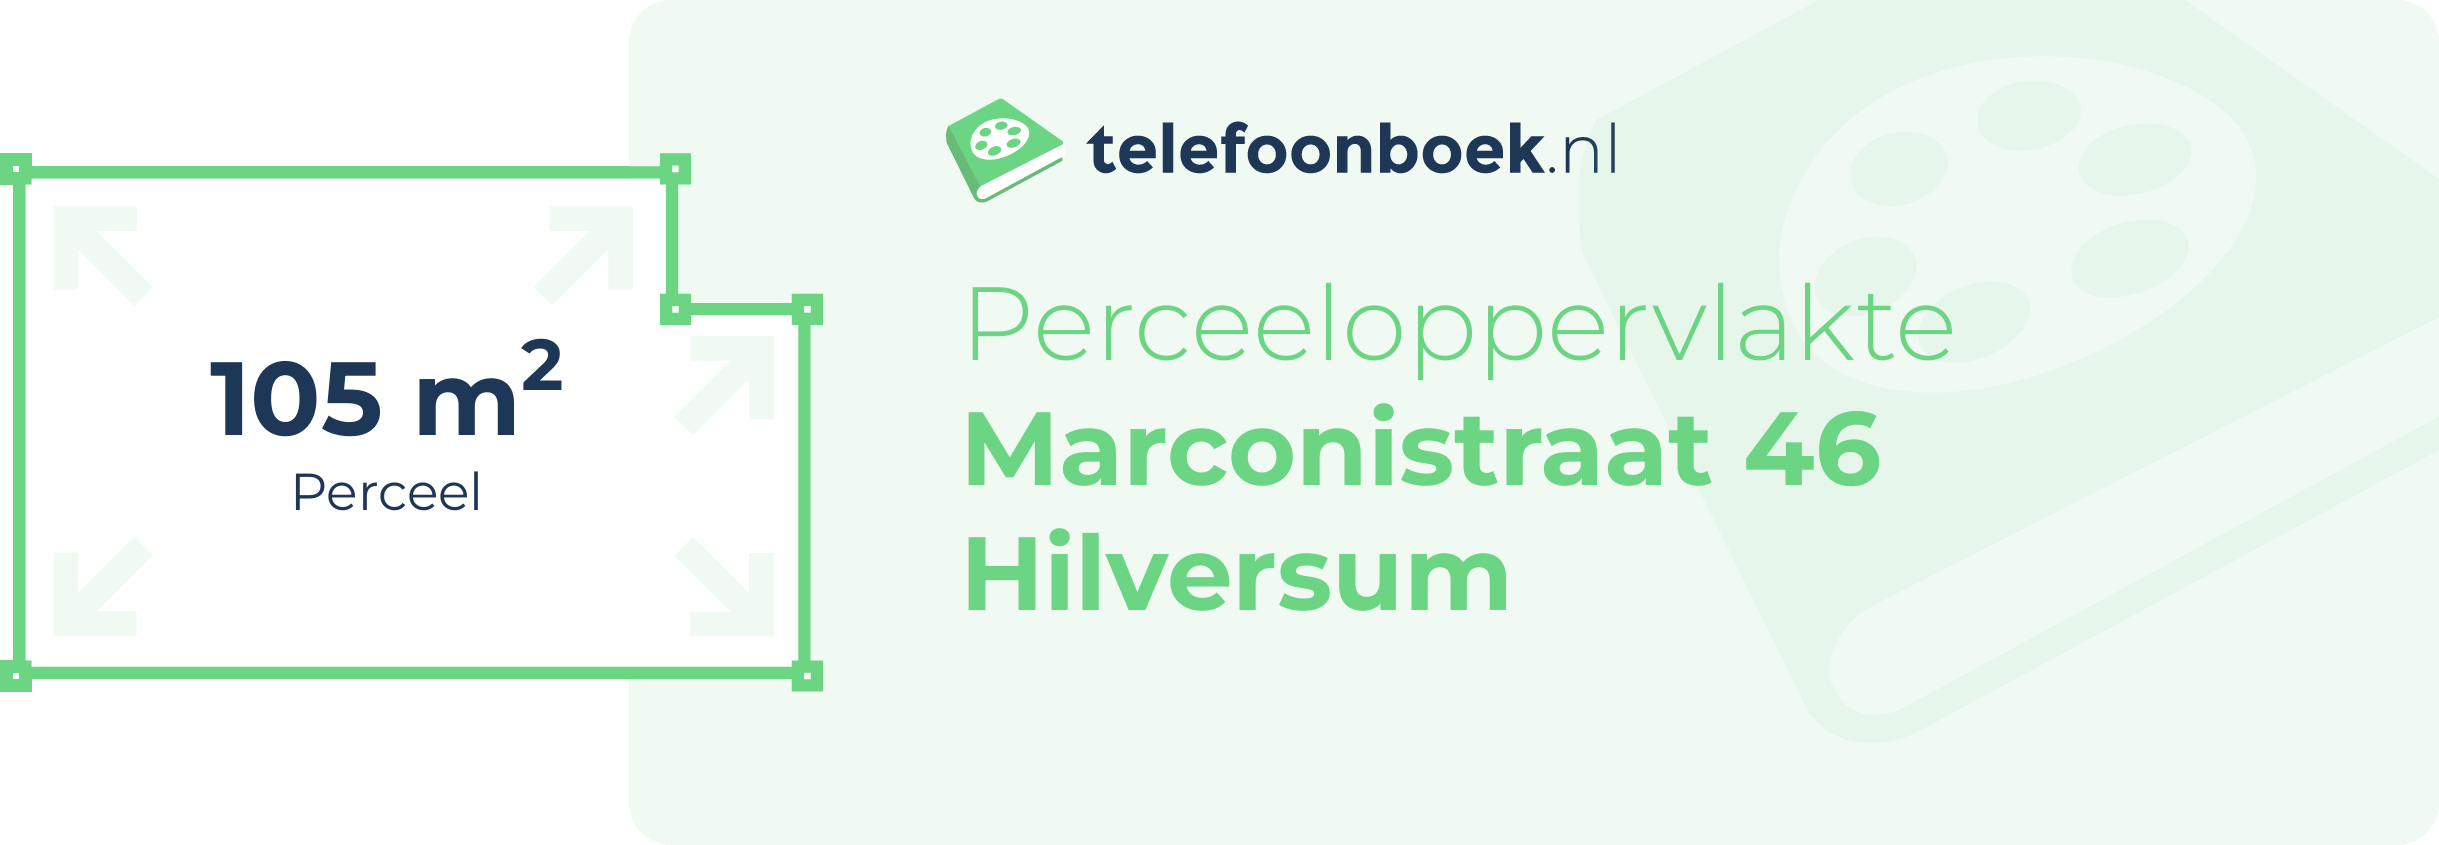 Perceeloppervlakte Marconistraat 46 Hilversum